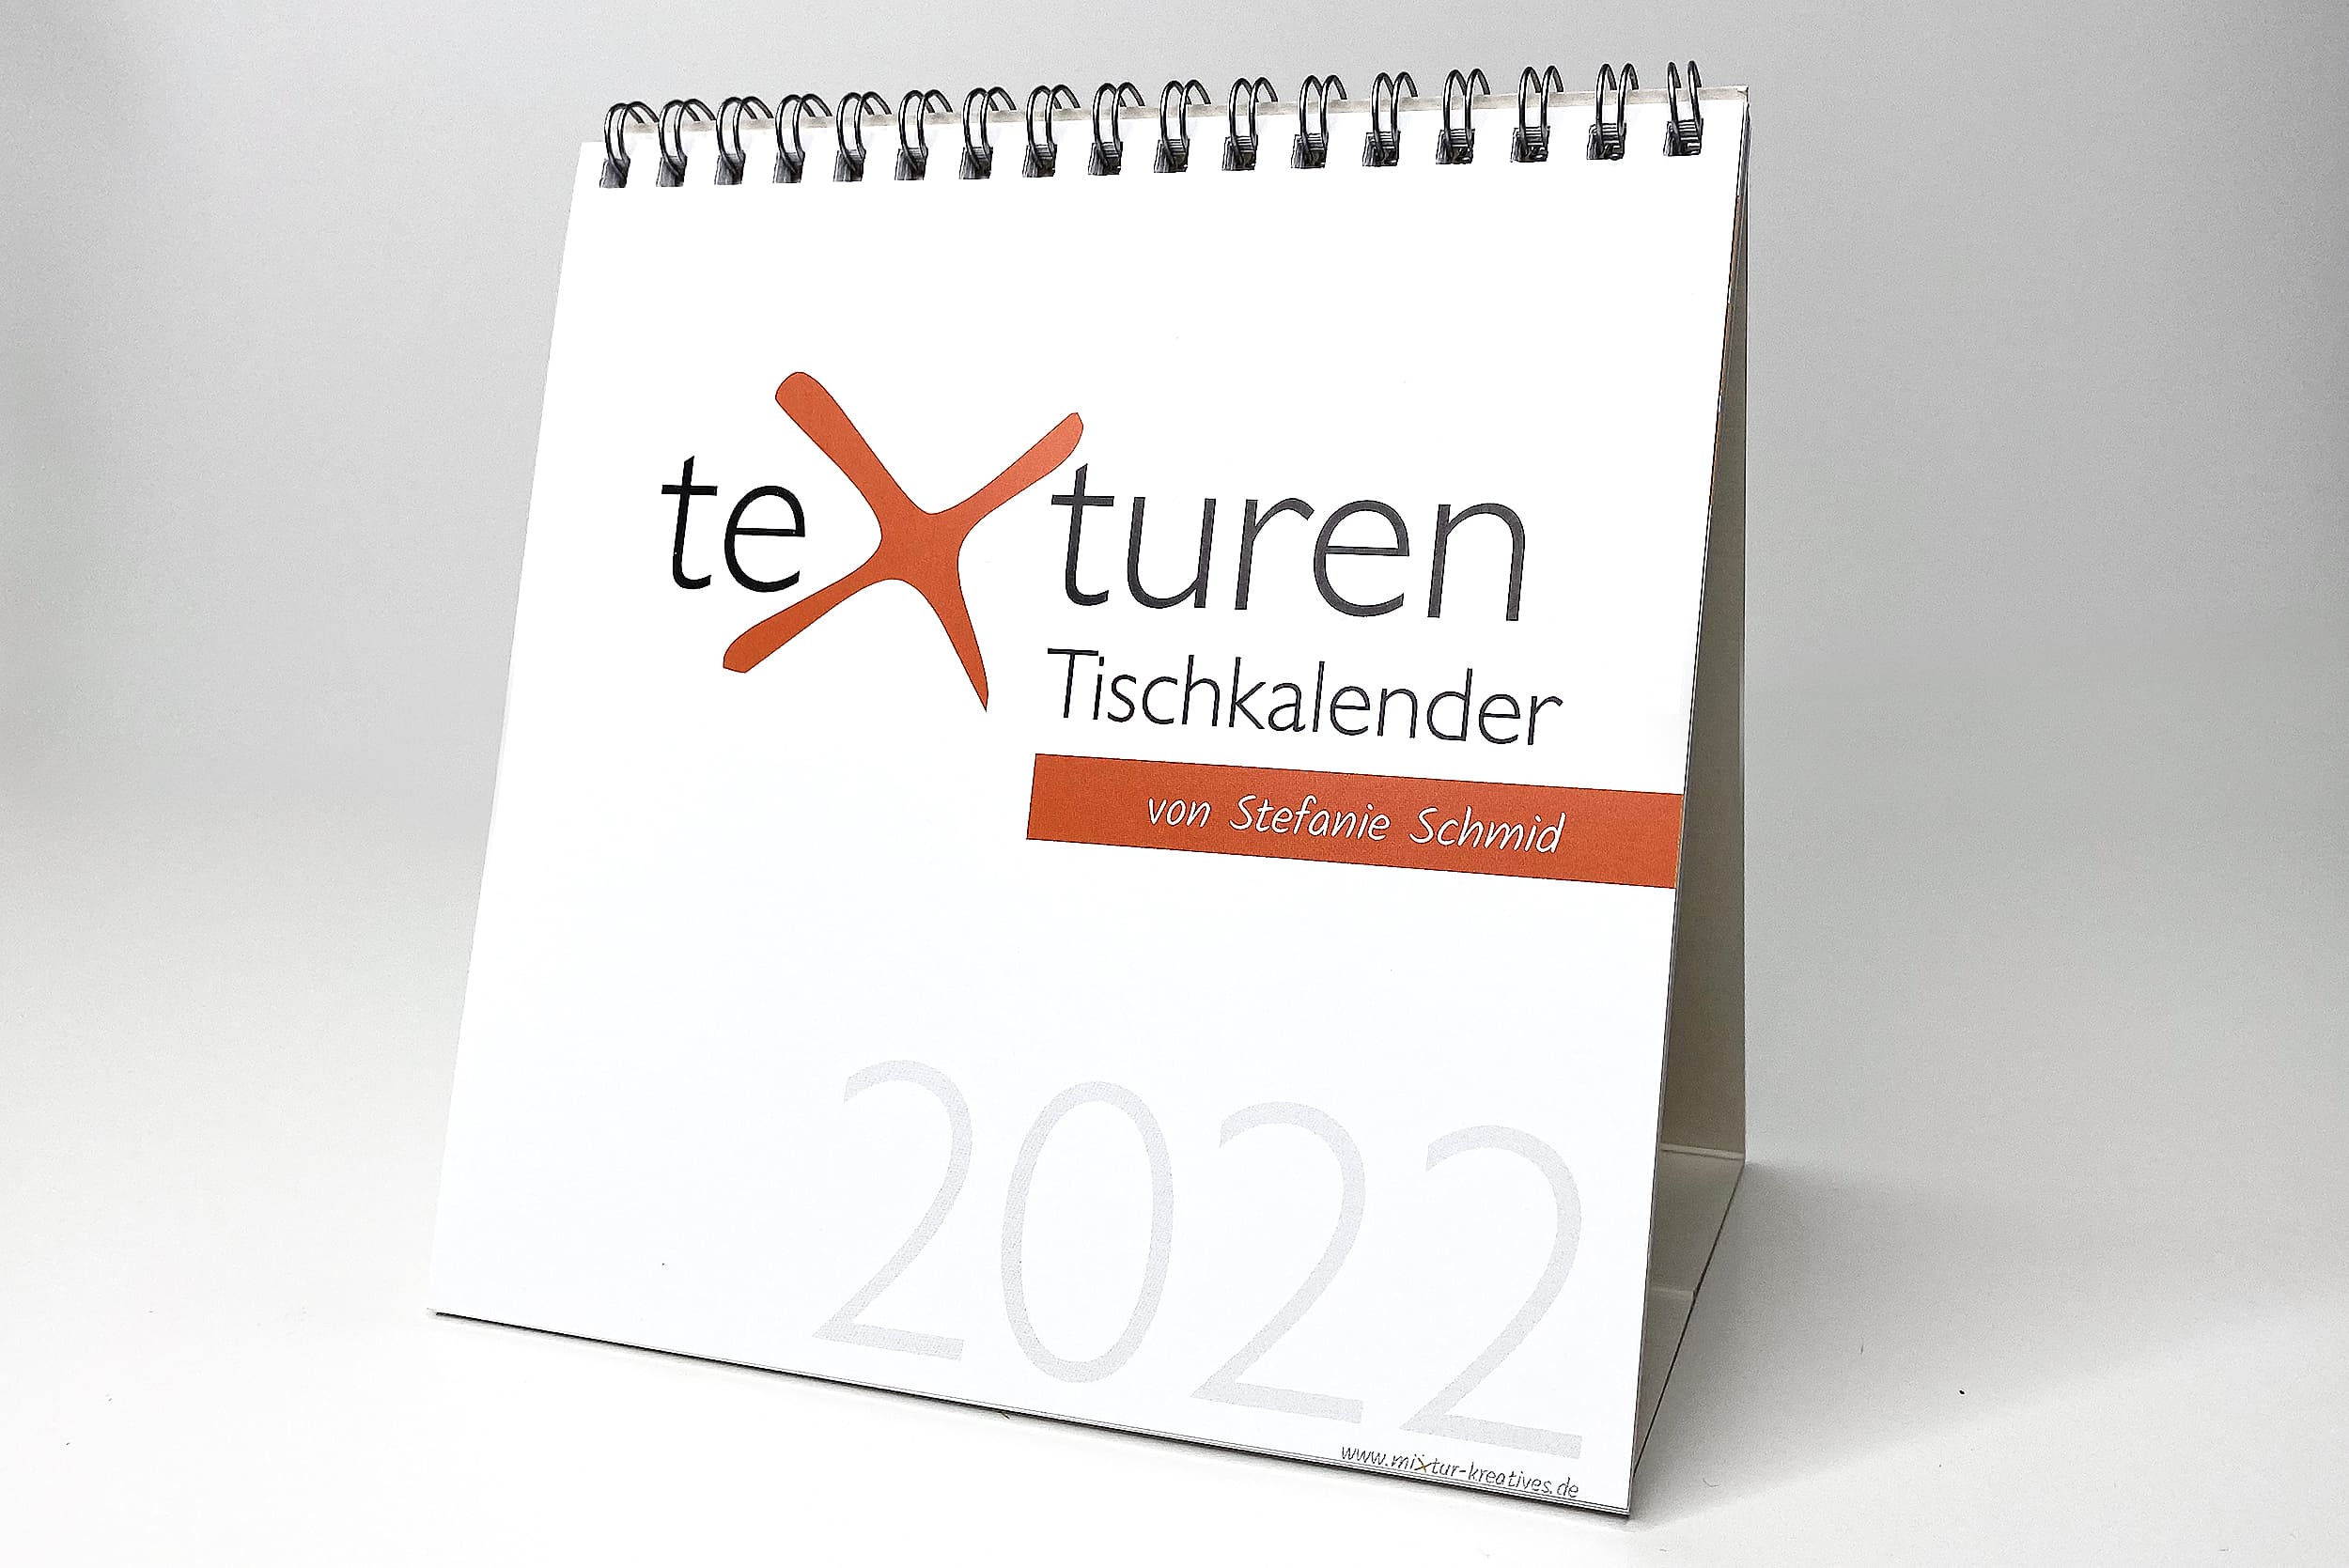 texturen Tischkalender 2022: Meerblicke